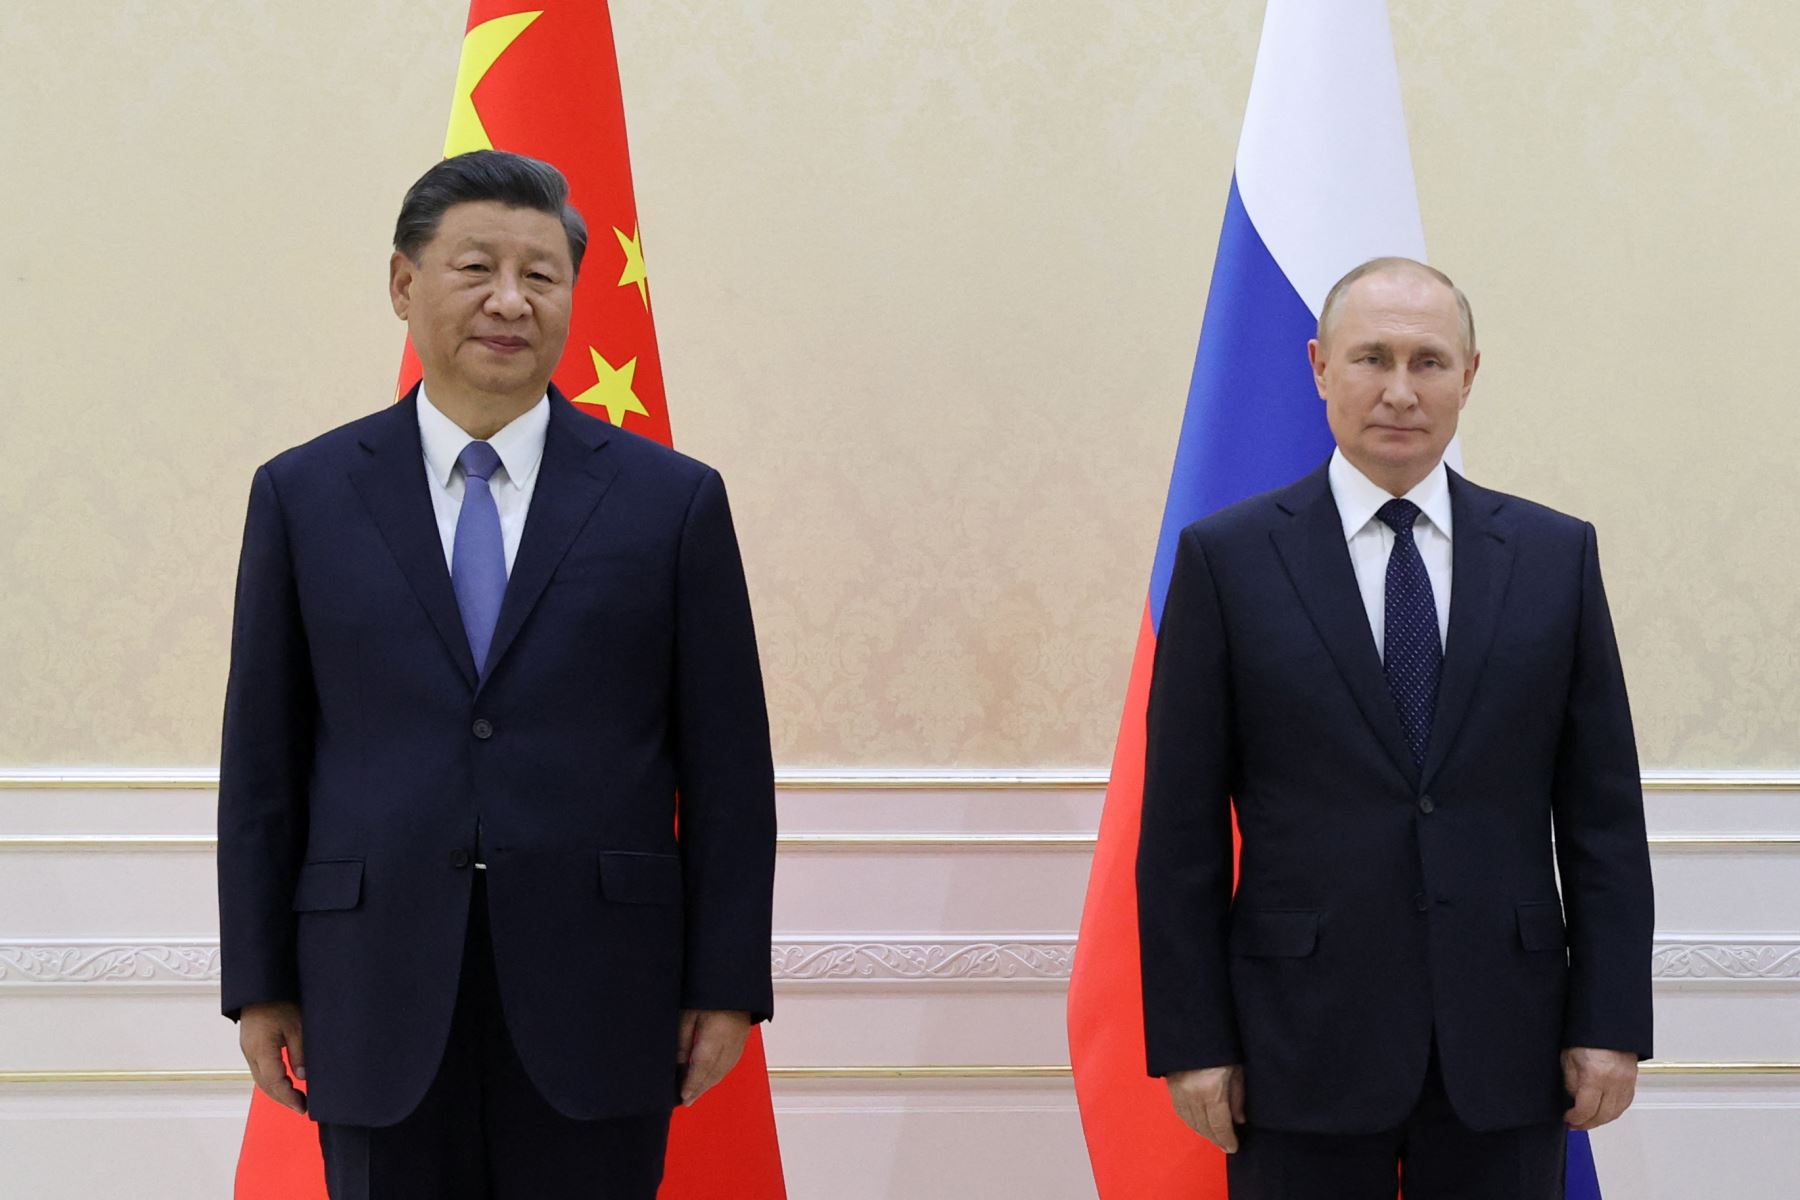 Además de Xi, Putin se reunió el jueves con el presidente iraní Ebrahim Raisi. Foto: AFP